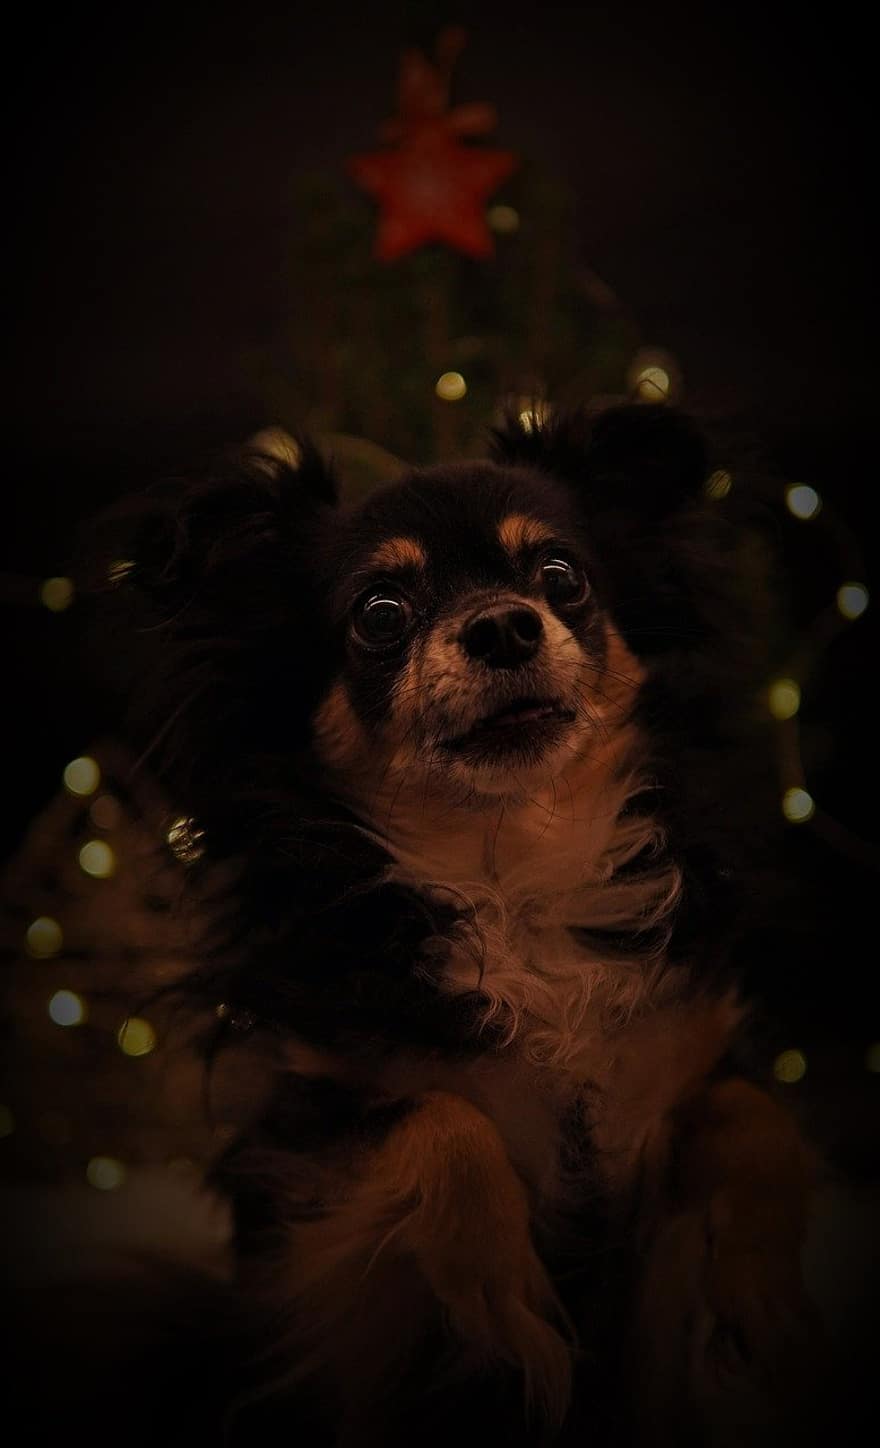 giáng sinh, kỳ nghỉ vui vẻ, thiệp Giáng sinh, ngôi sao giáng sinh, đèn, phông nền màu đen, chihuahua, chó, thú vật